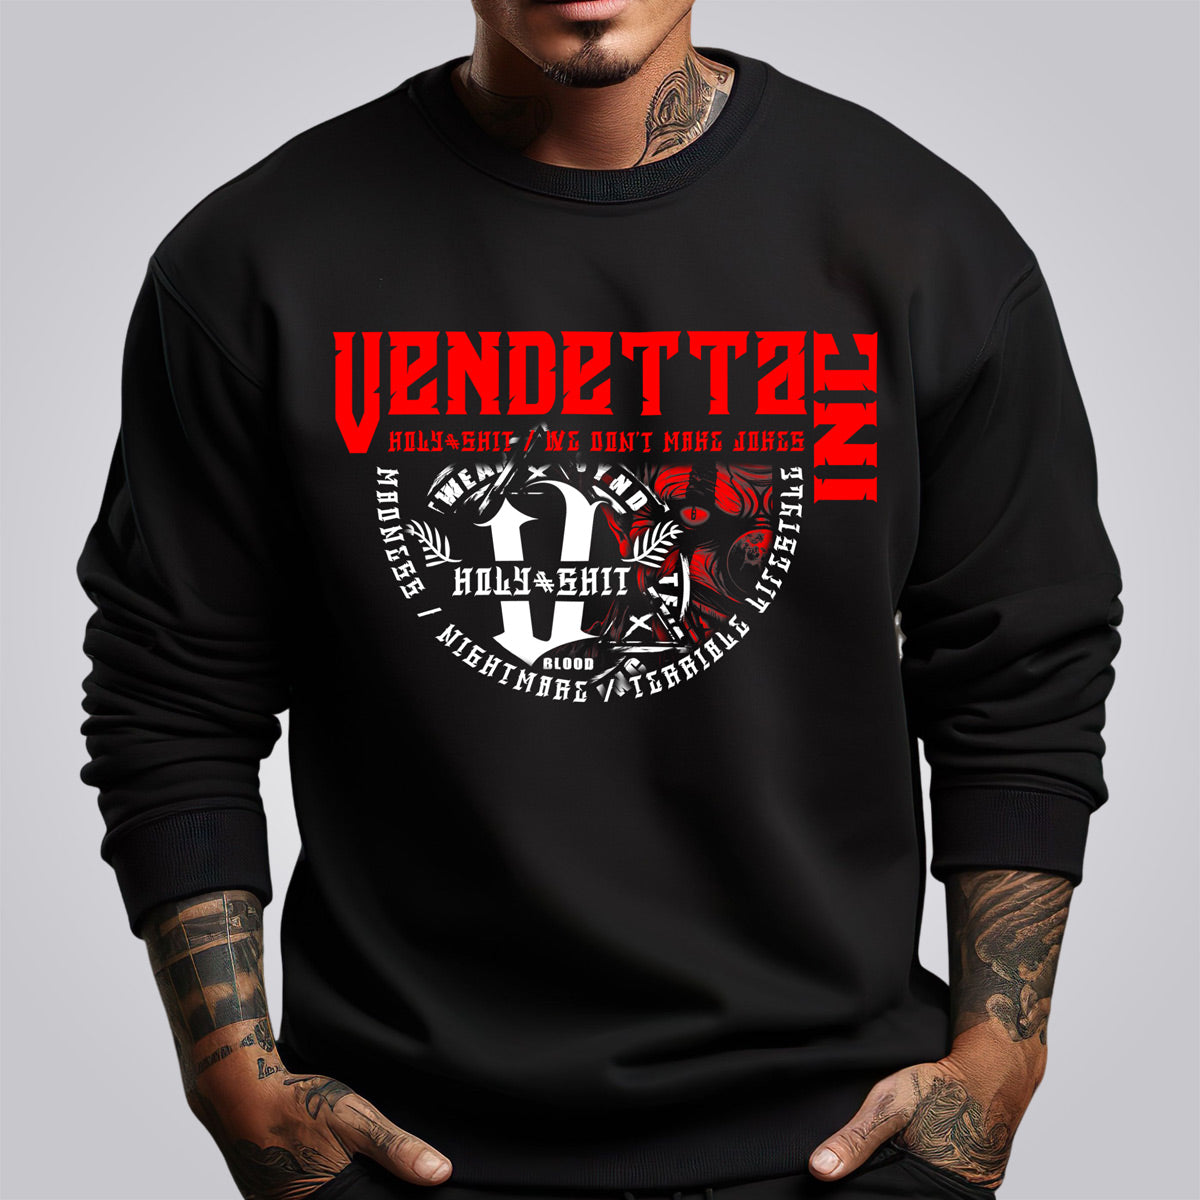 Vendetta Inc. Sweatshirt Insane Clown schwarz VD-4037